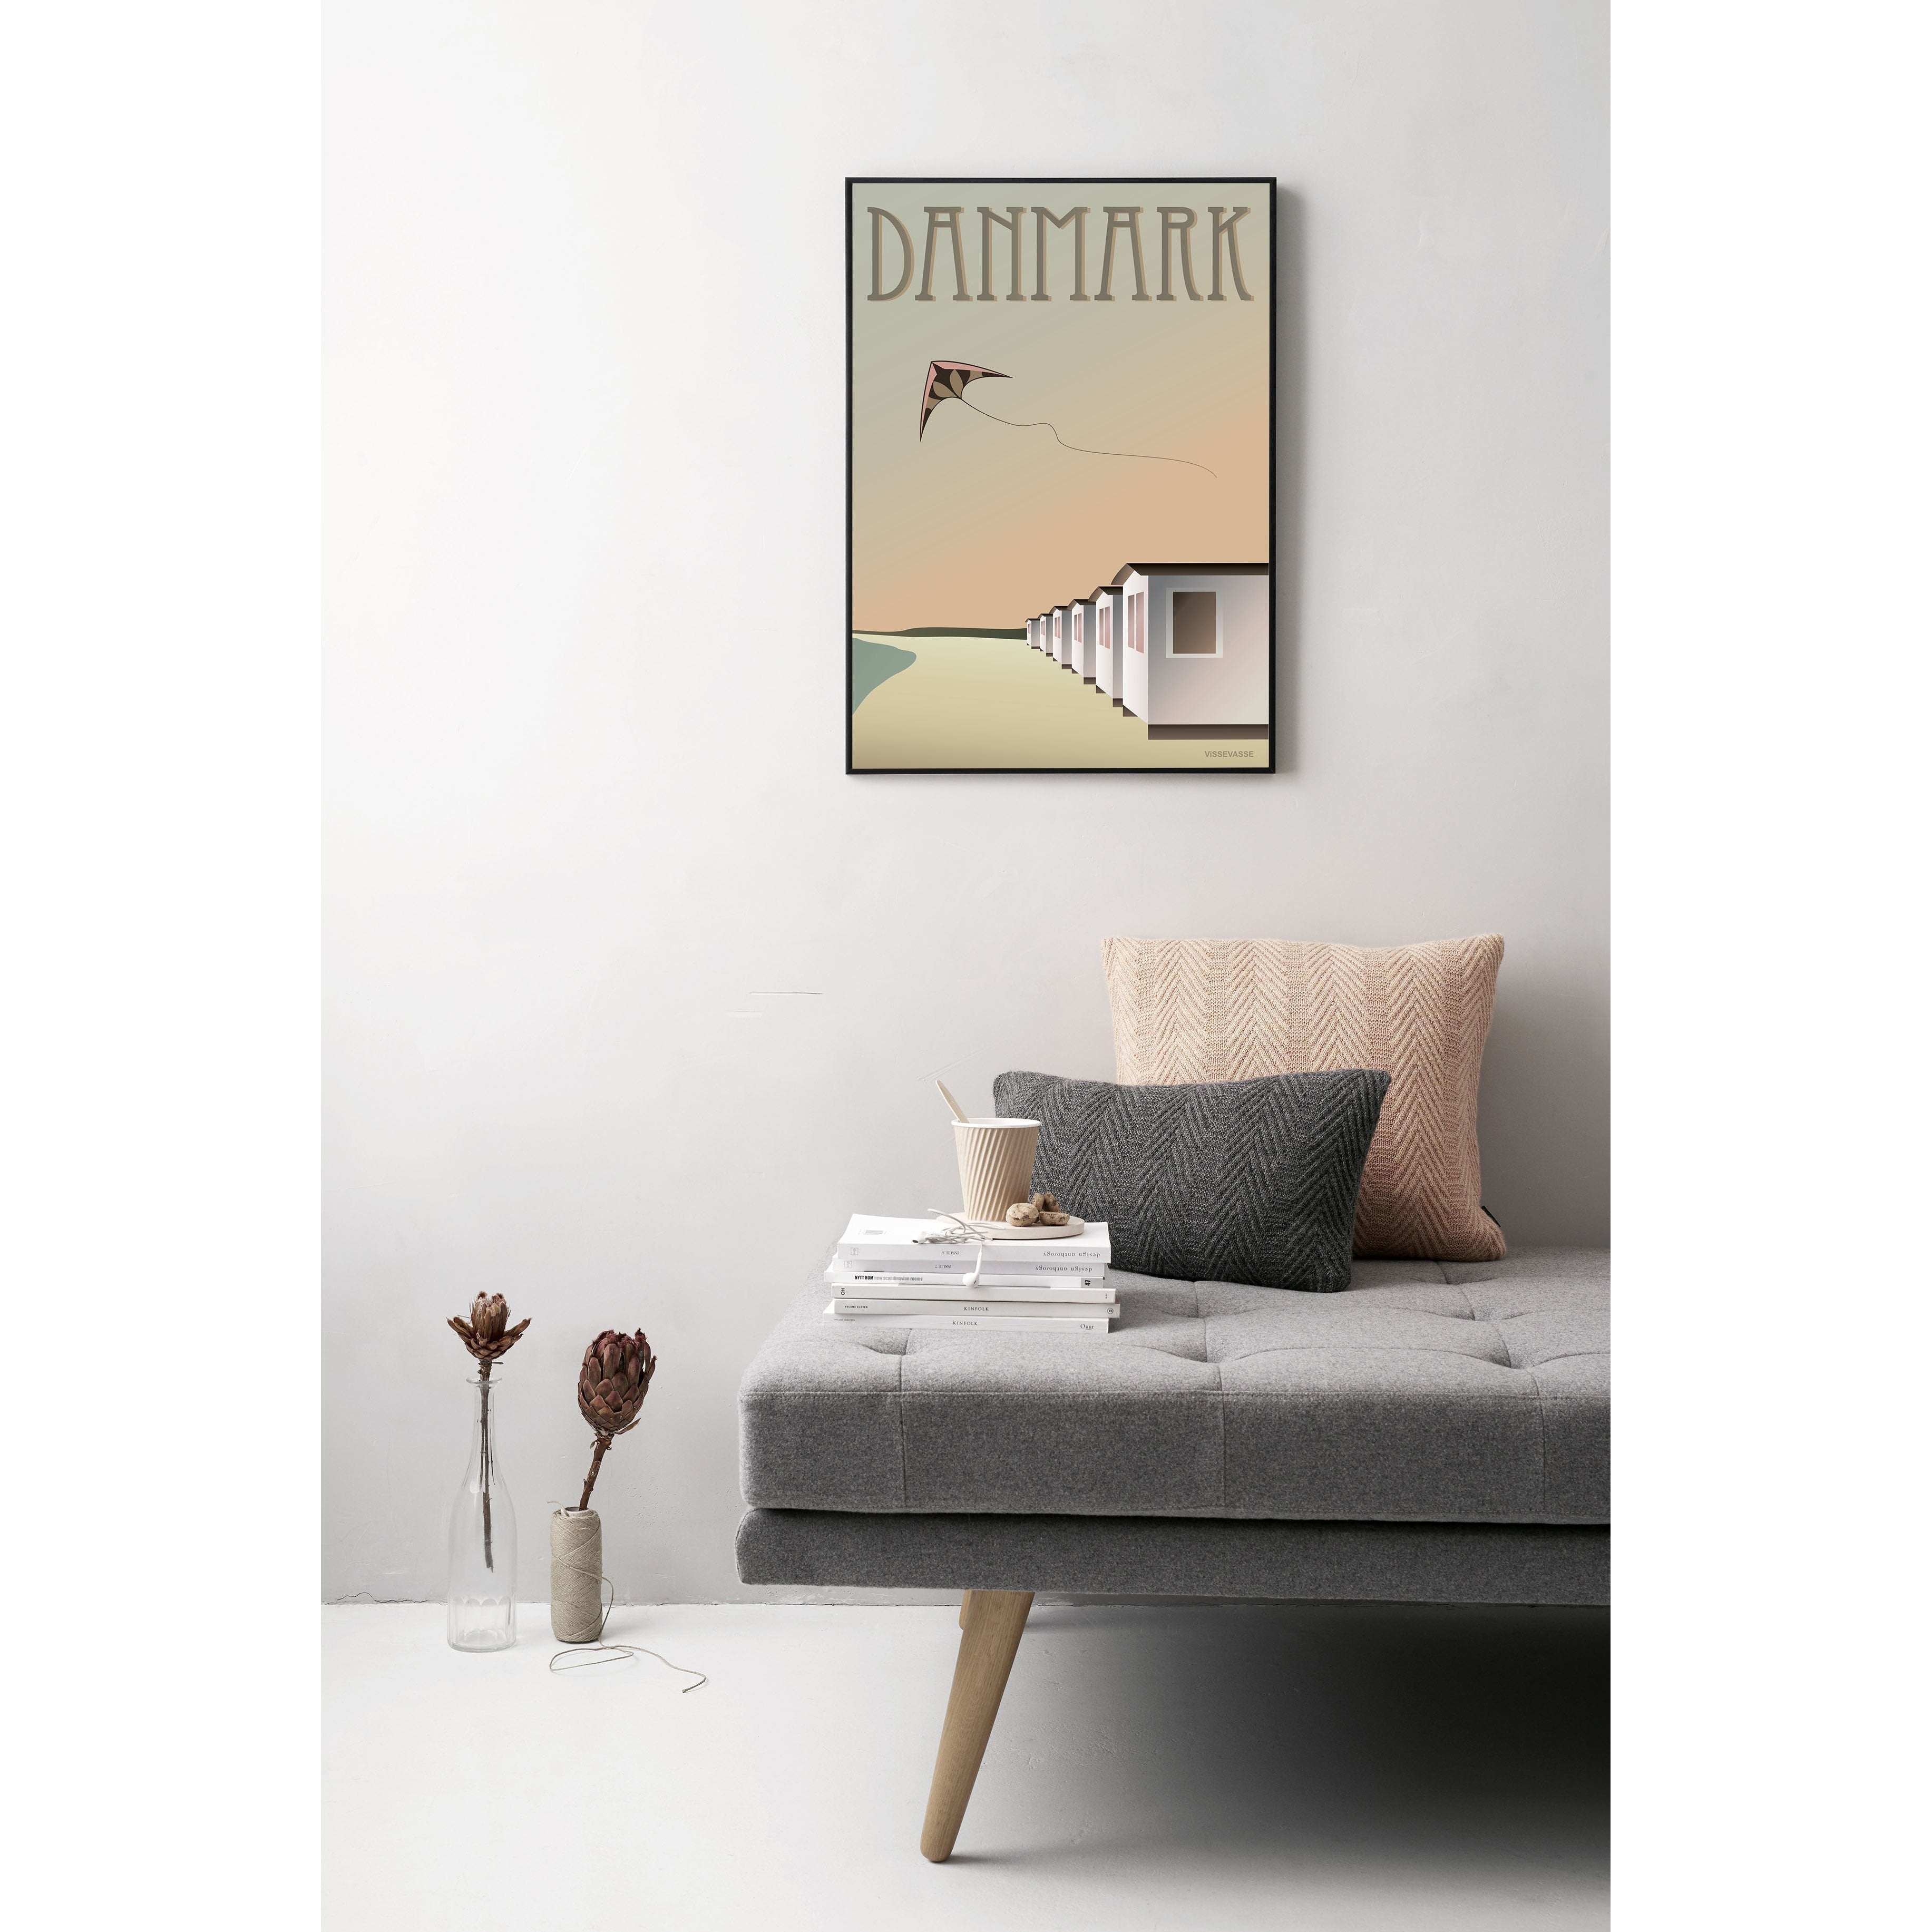 Vissevasse Danmark badhus affisch, 15x21 cm